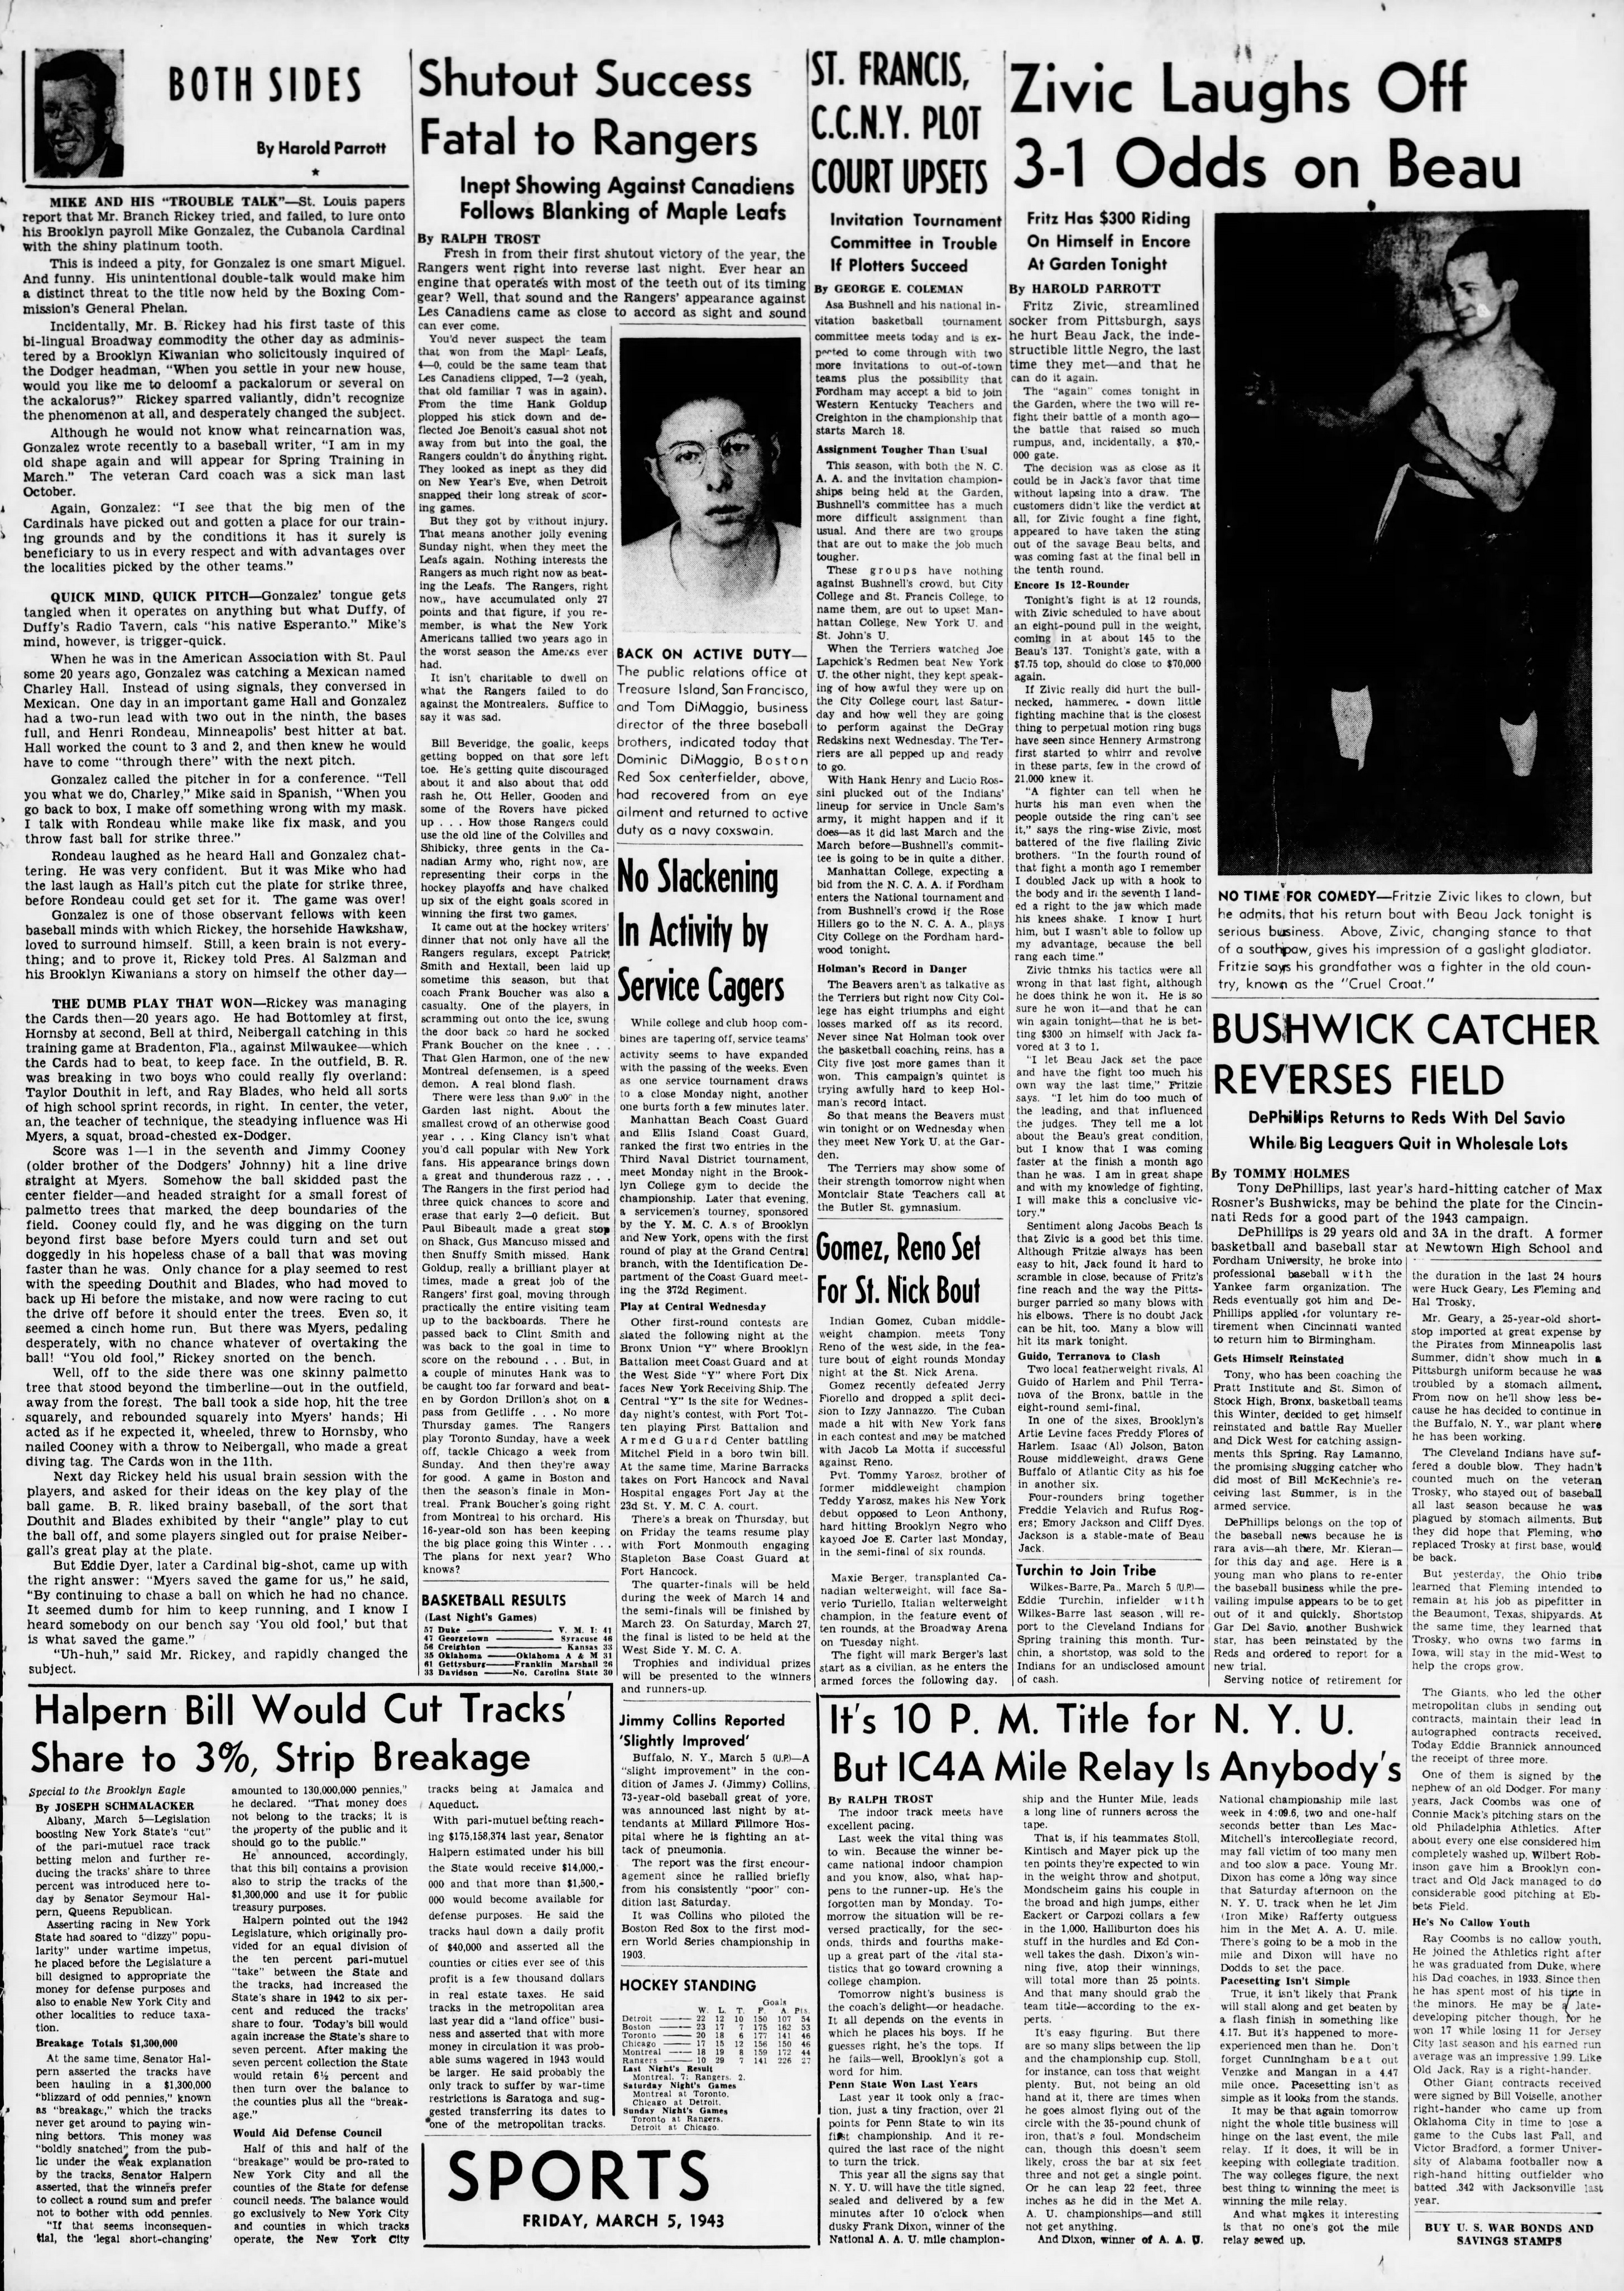 The_Brooklyn_Daily_Eagle_Fri__Mar_5__1943_(4).jpg